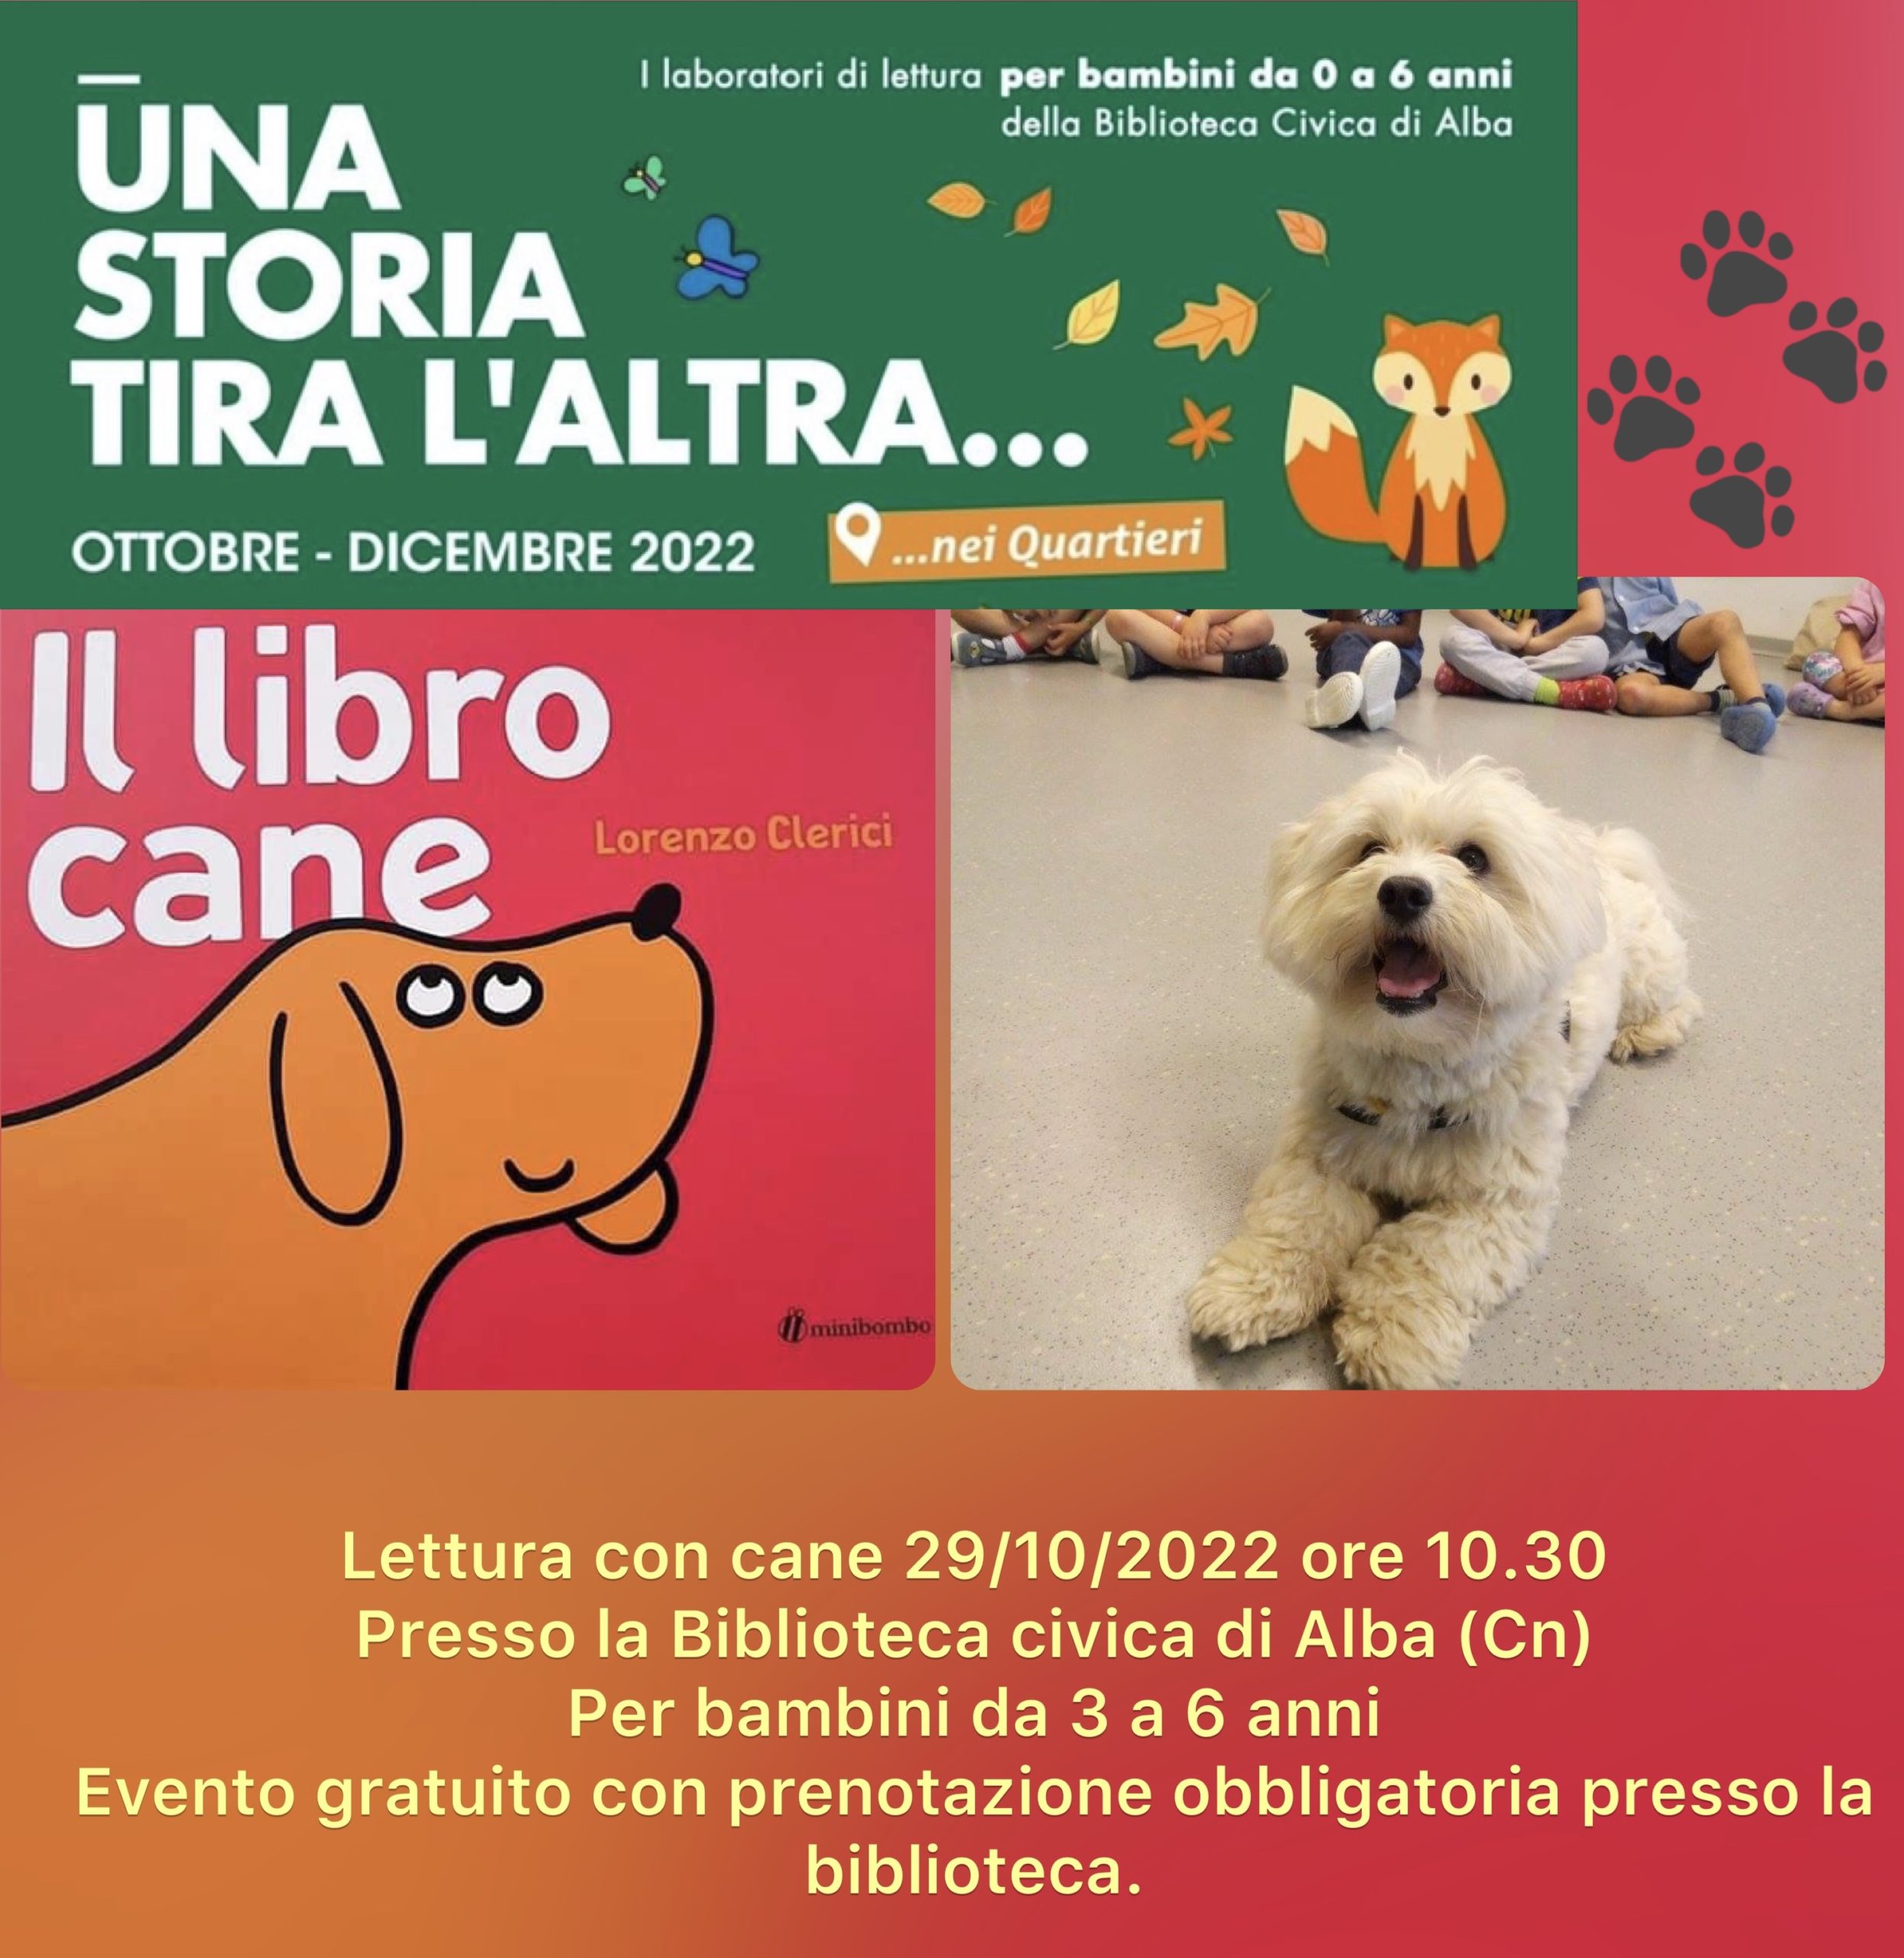 Lettura con cane presso la biblioteca civica di Alba – il libro cane